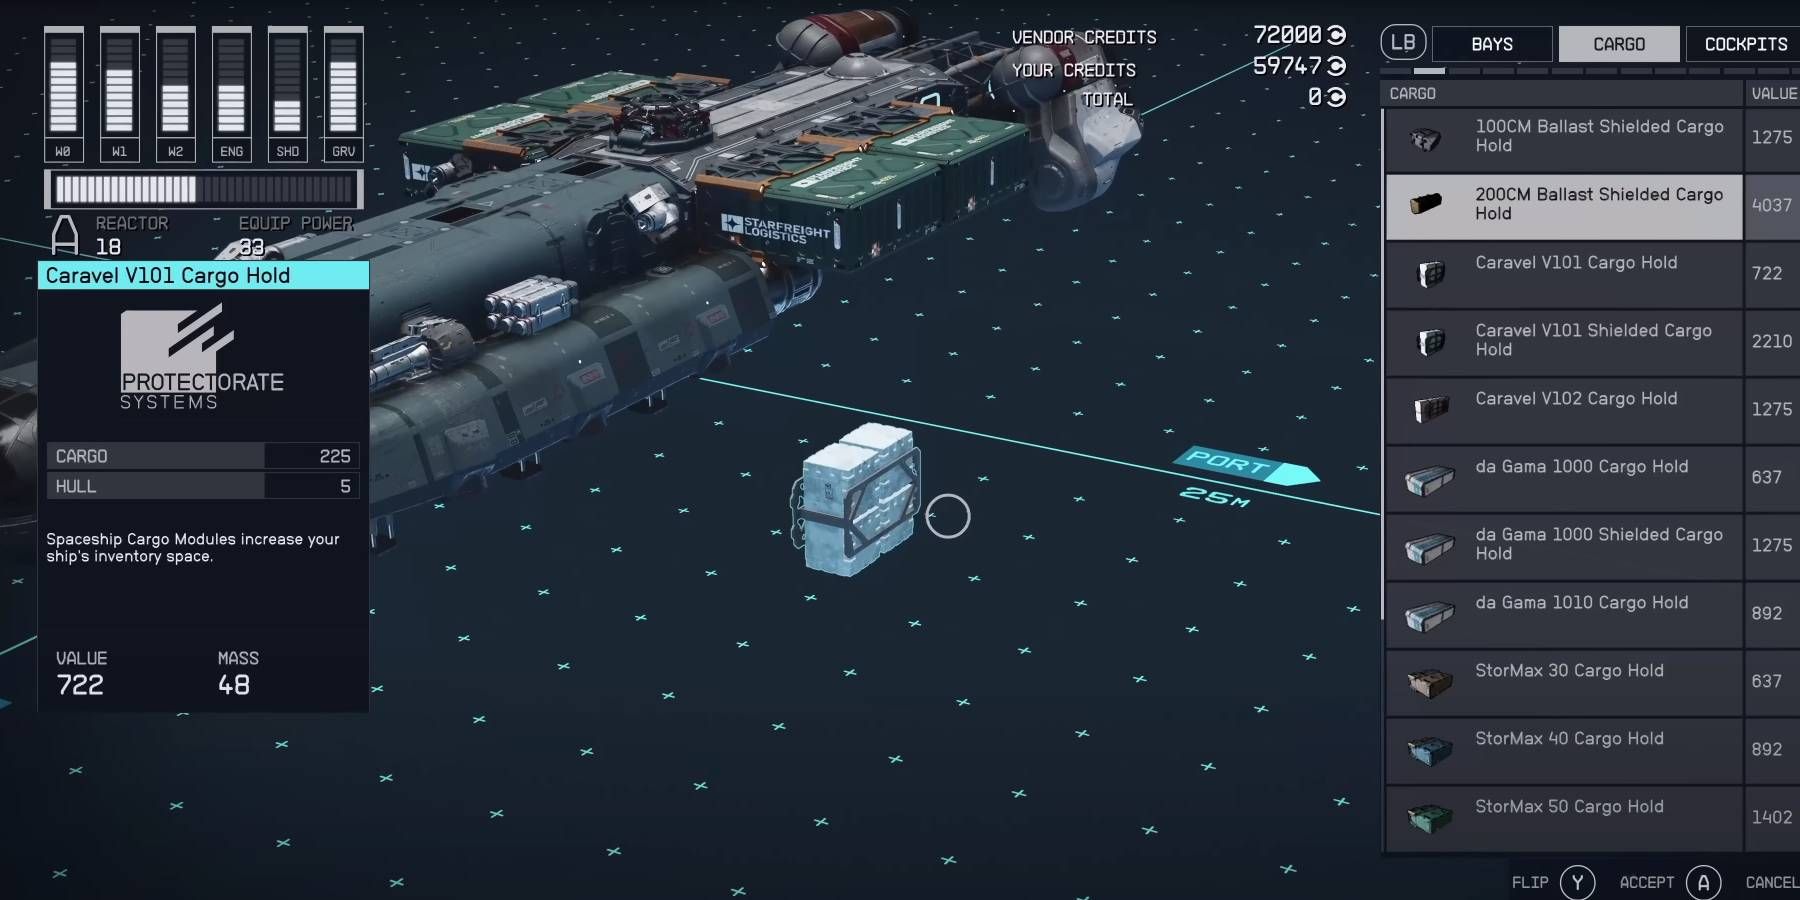 Starfield nutzt die Abschirmung des Frachtraums, um Schmuggelware wie Aurora zu schmuggeln und zu verkaufen